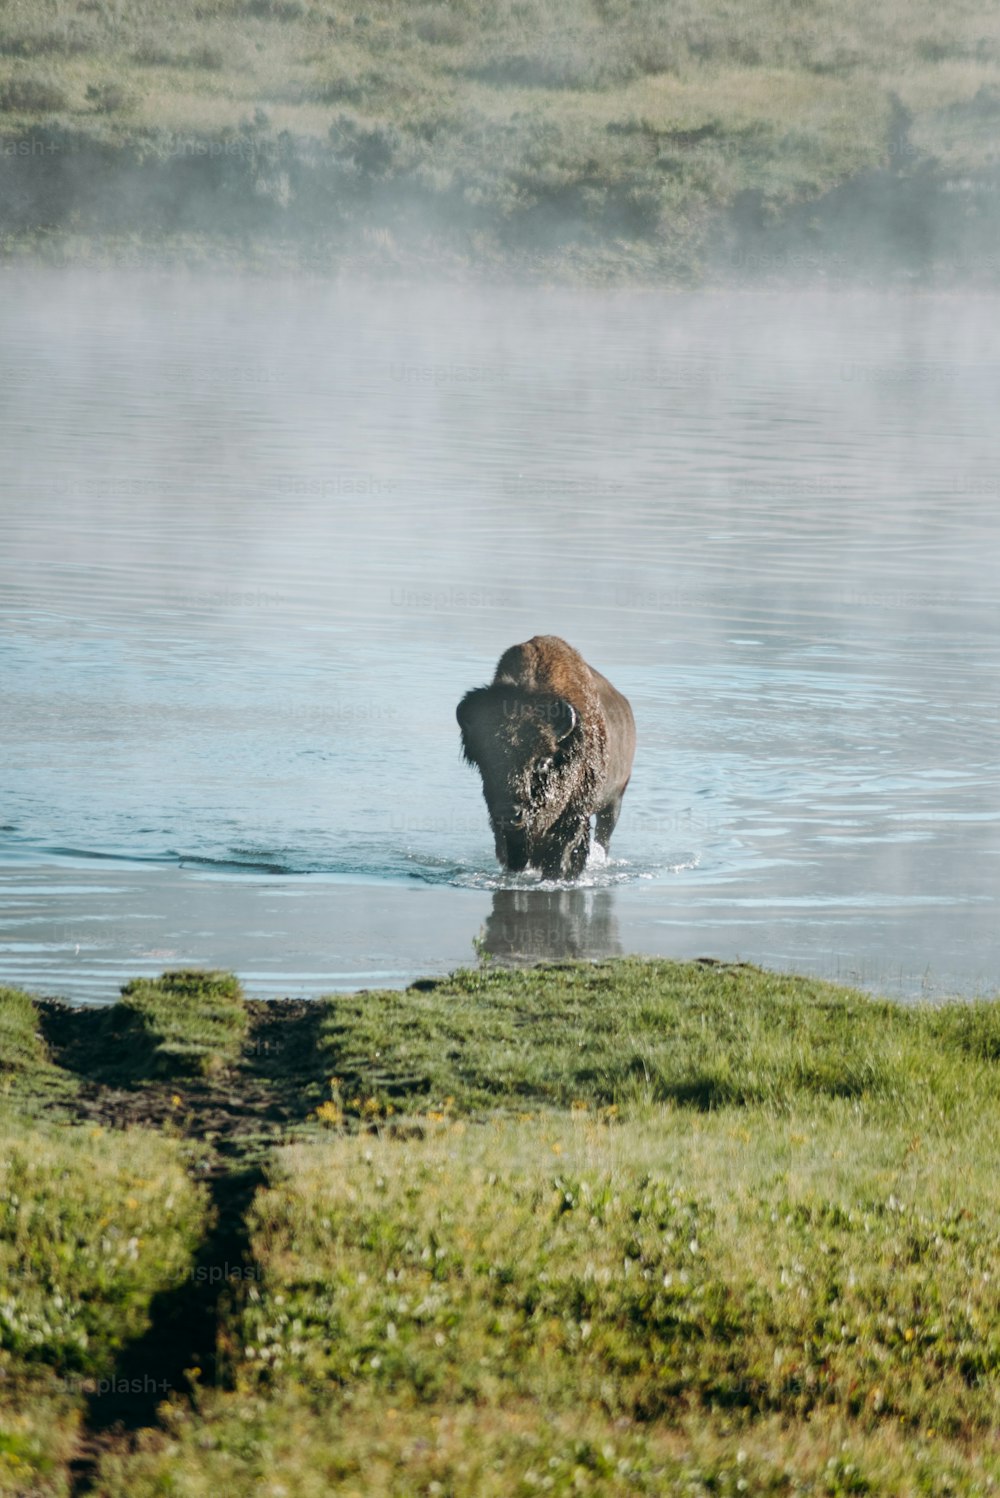 水域を横切って歩く大きなヒグマ